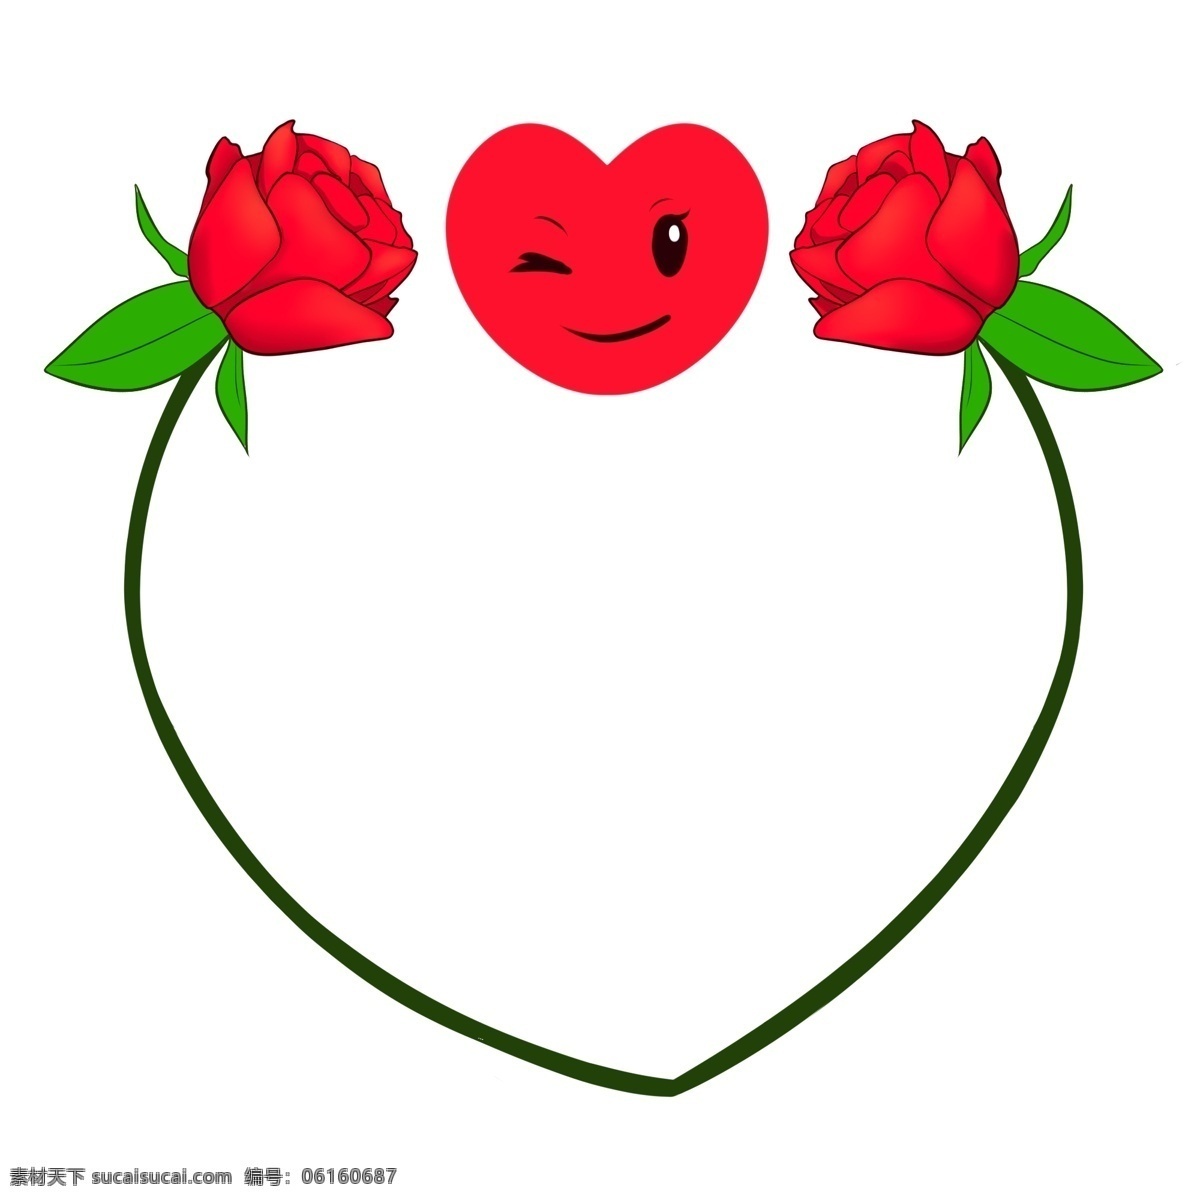 情人节 鲜花 边框 插画 情人节边框 黑色的边框 红色的鲜花 绿色的叶子 植物装饰 卡通边框 立体边框